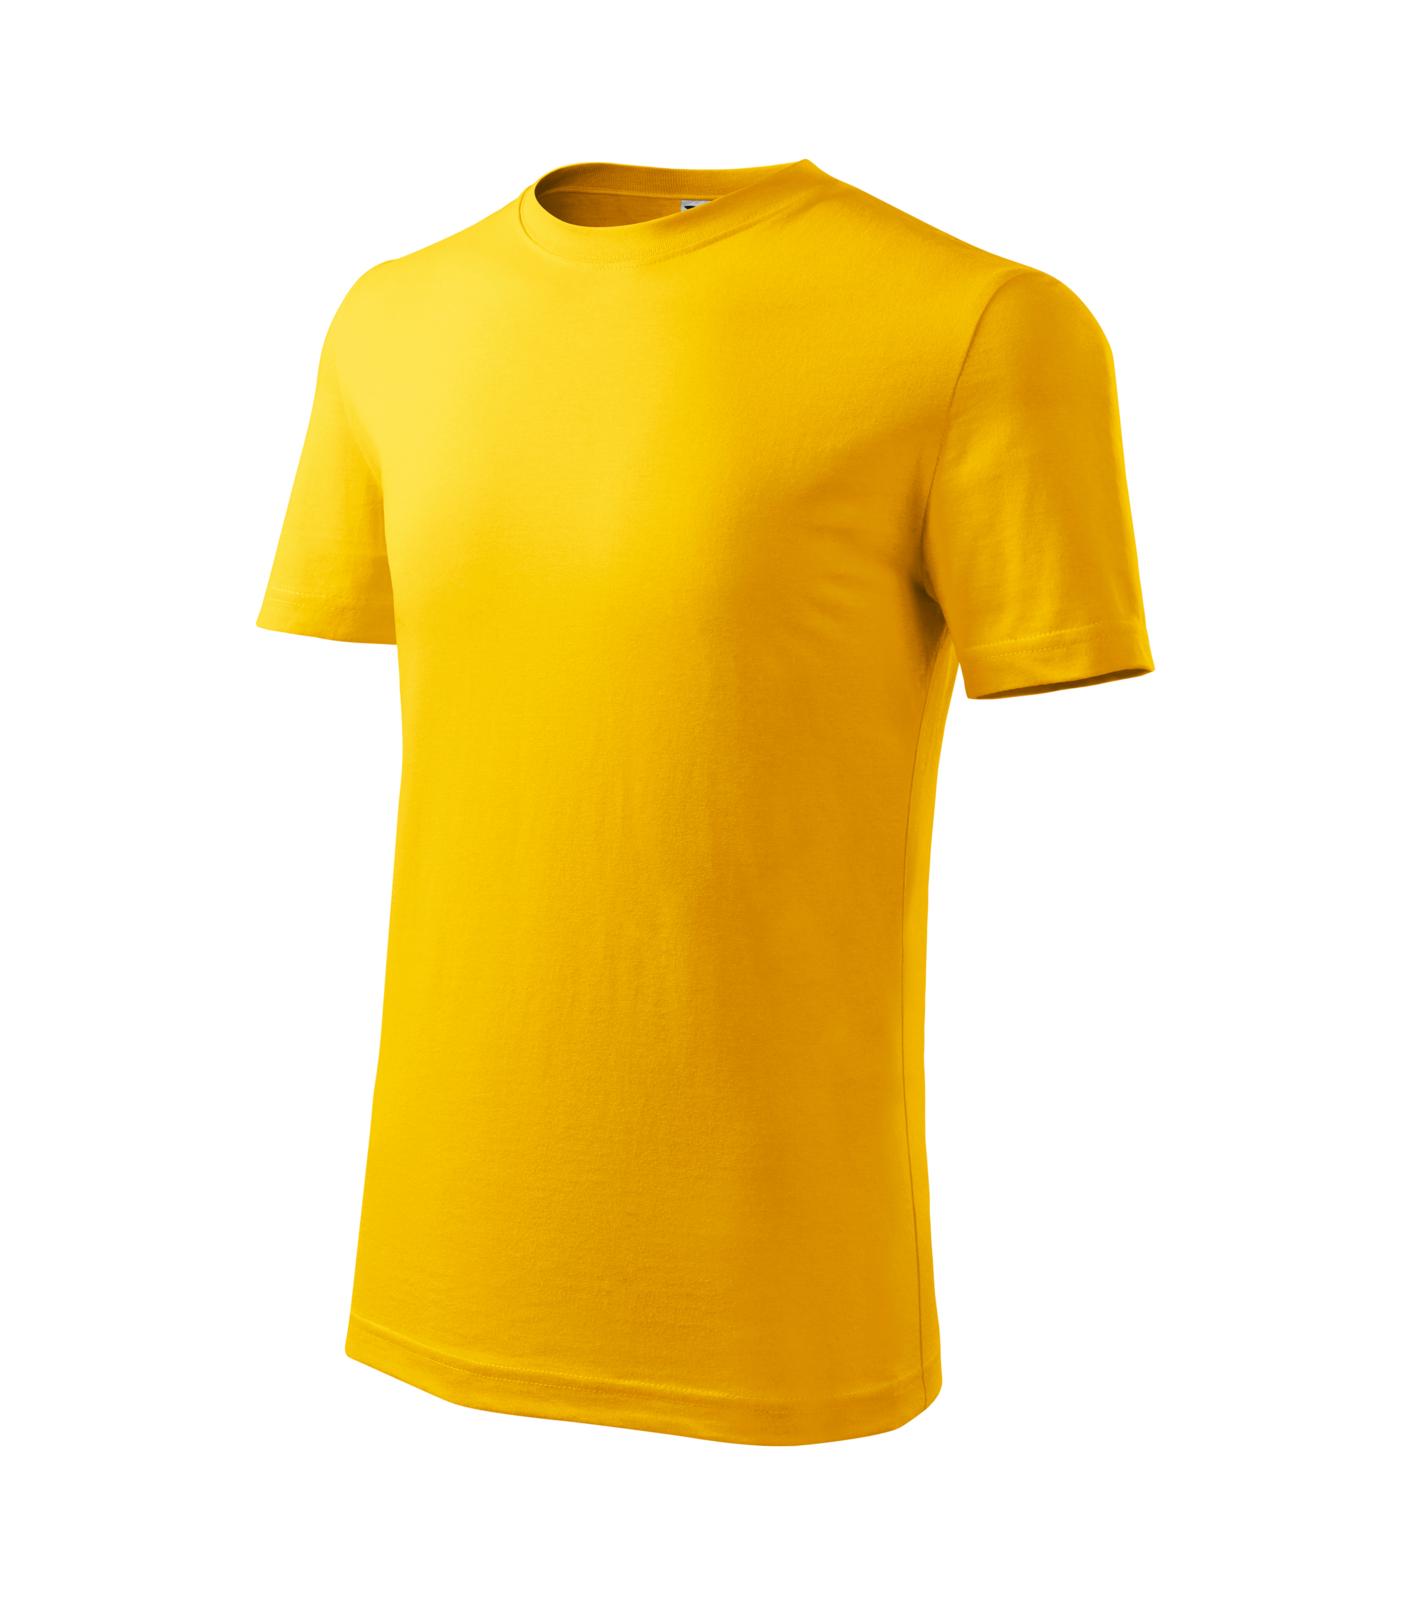 Classic New Tričko dětské Barva: žlutá, Velikost: 110 cm/4 roky